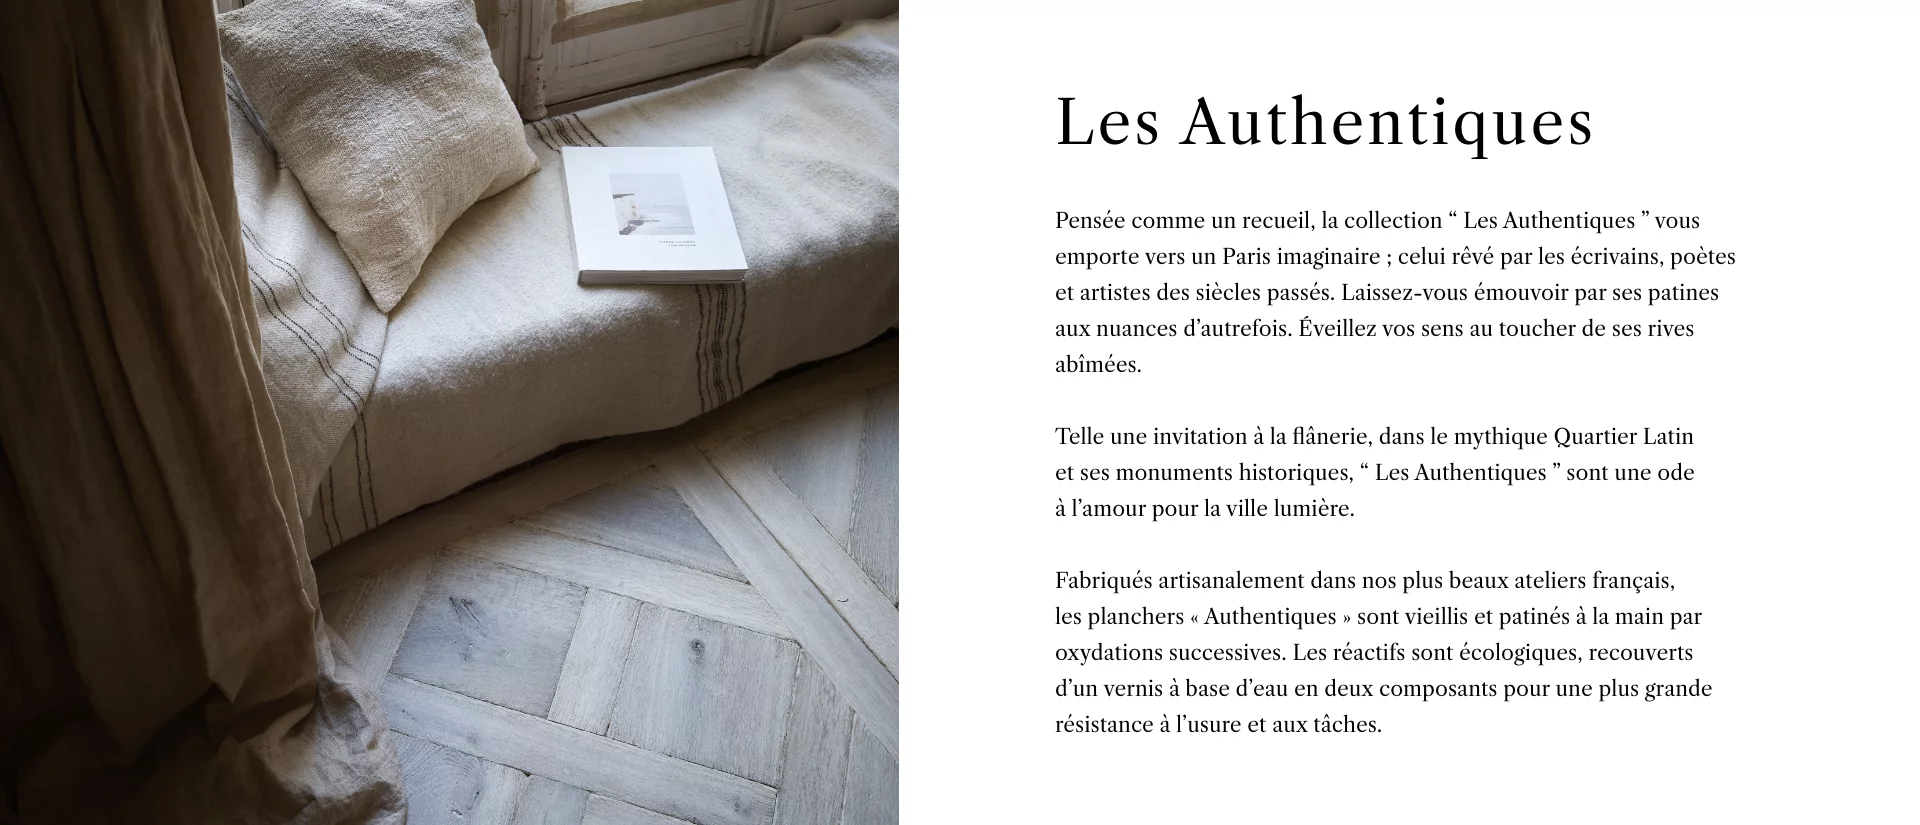 Collection Les Authentiques - Page Collection - Description